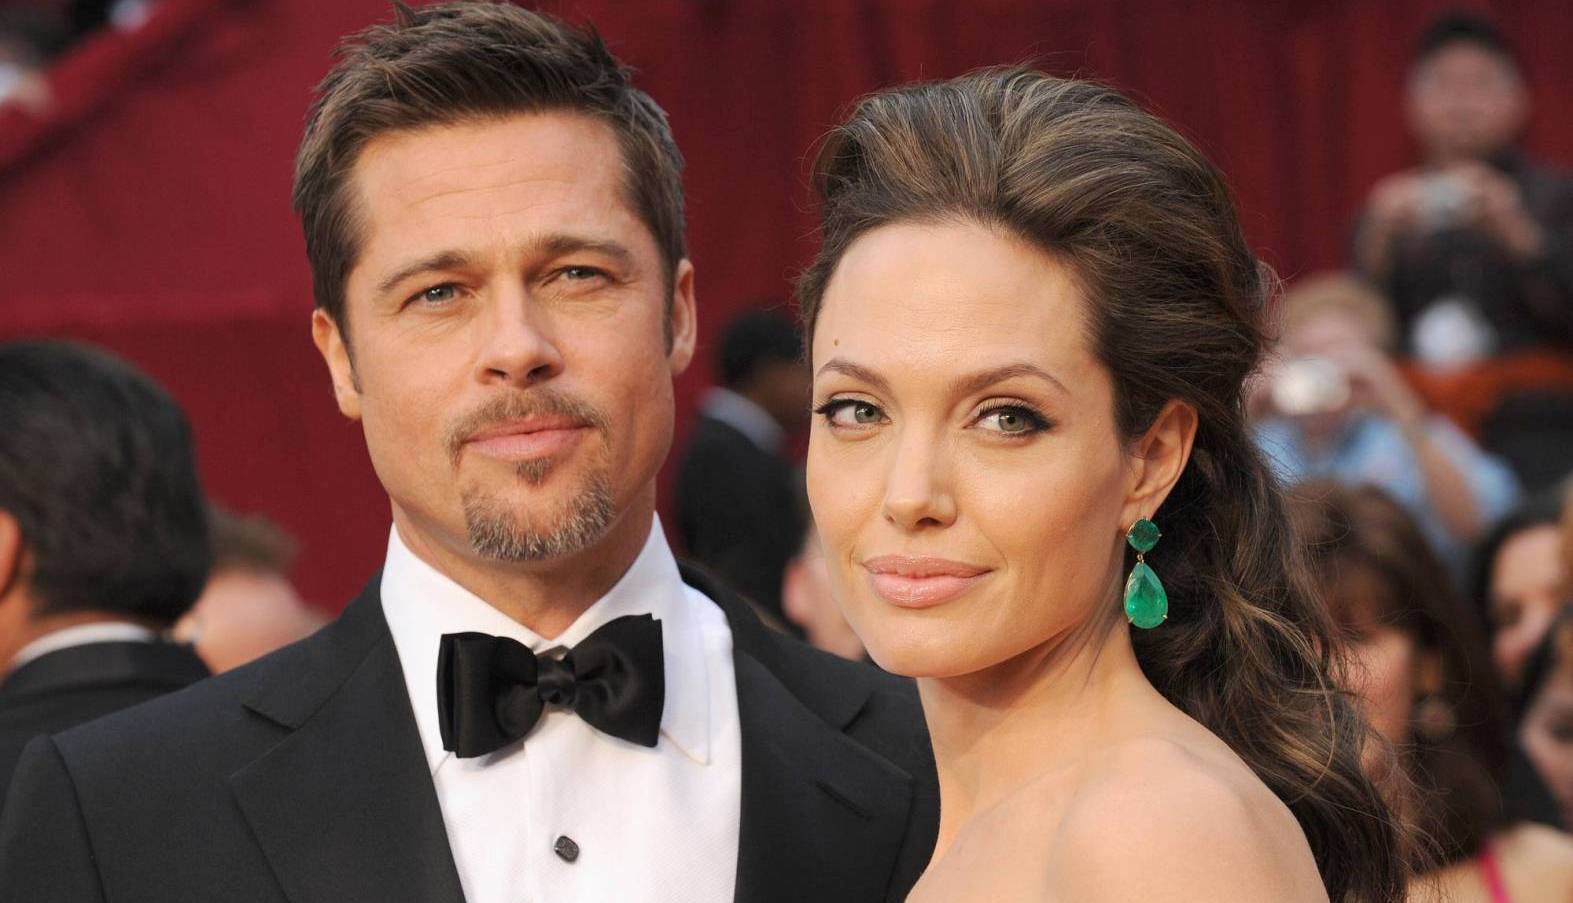 Фанаты Джоли и Питта буквально сходят с ума из-за развала брака их кумиров: житель Запорожья собирает в Сети подписи против развода